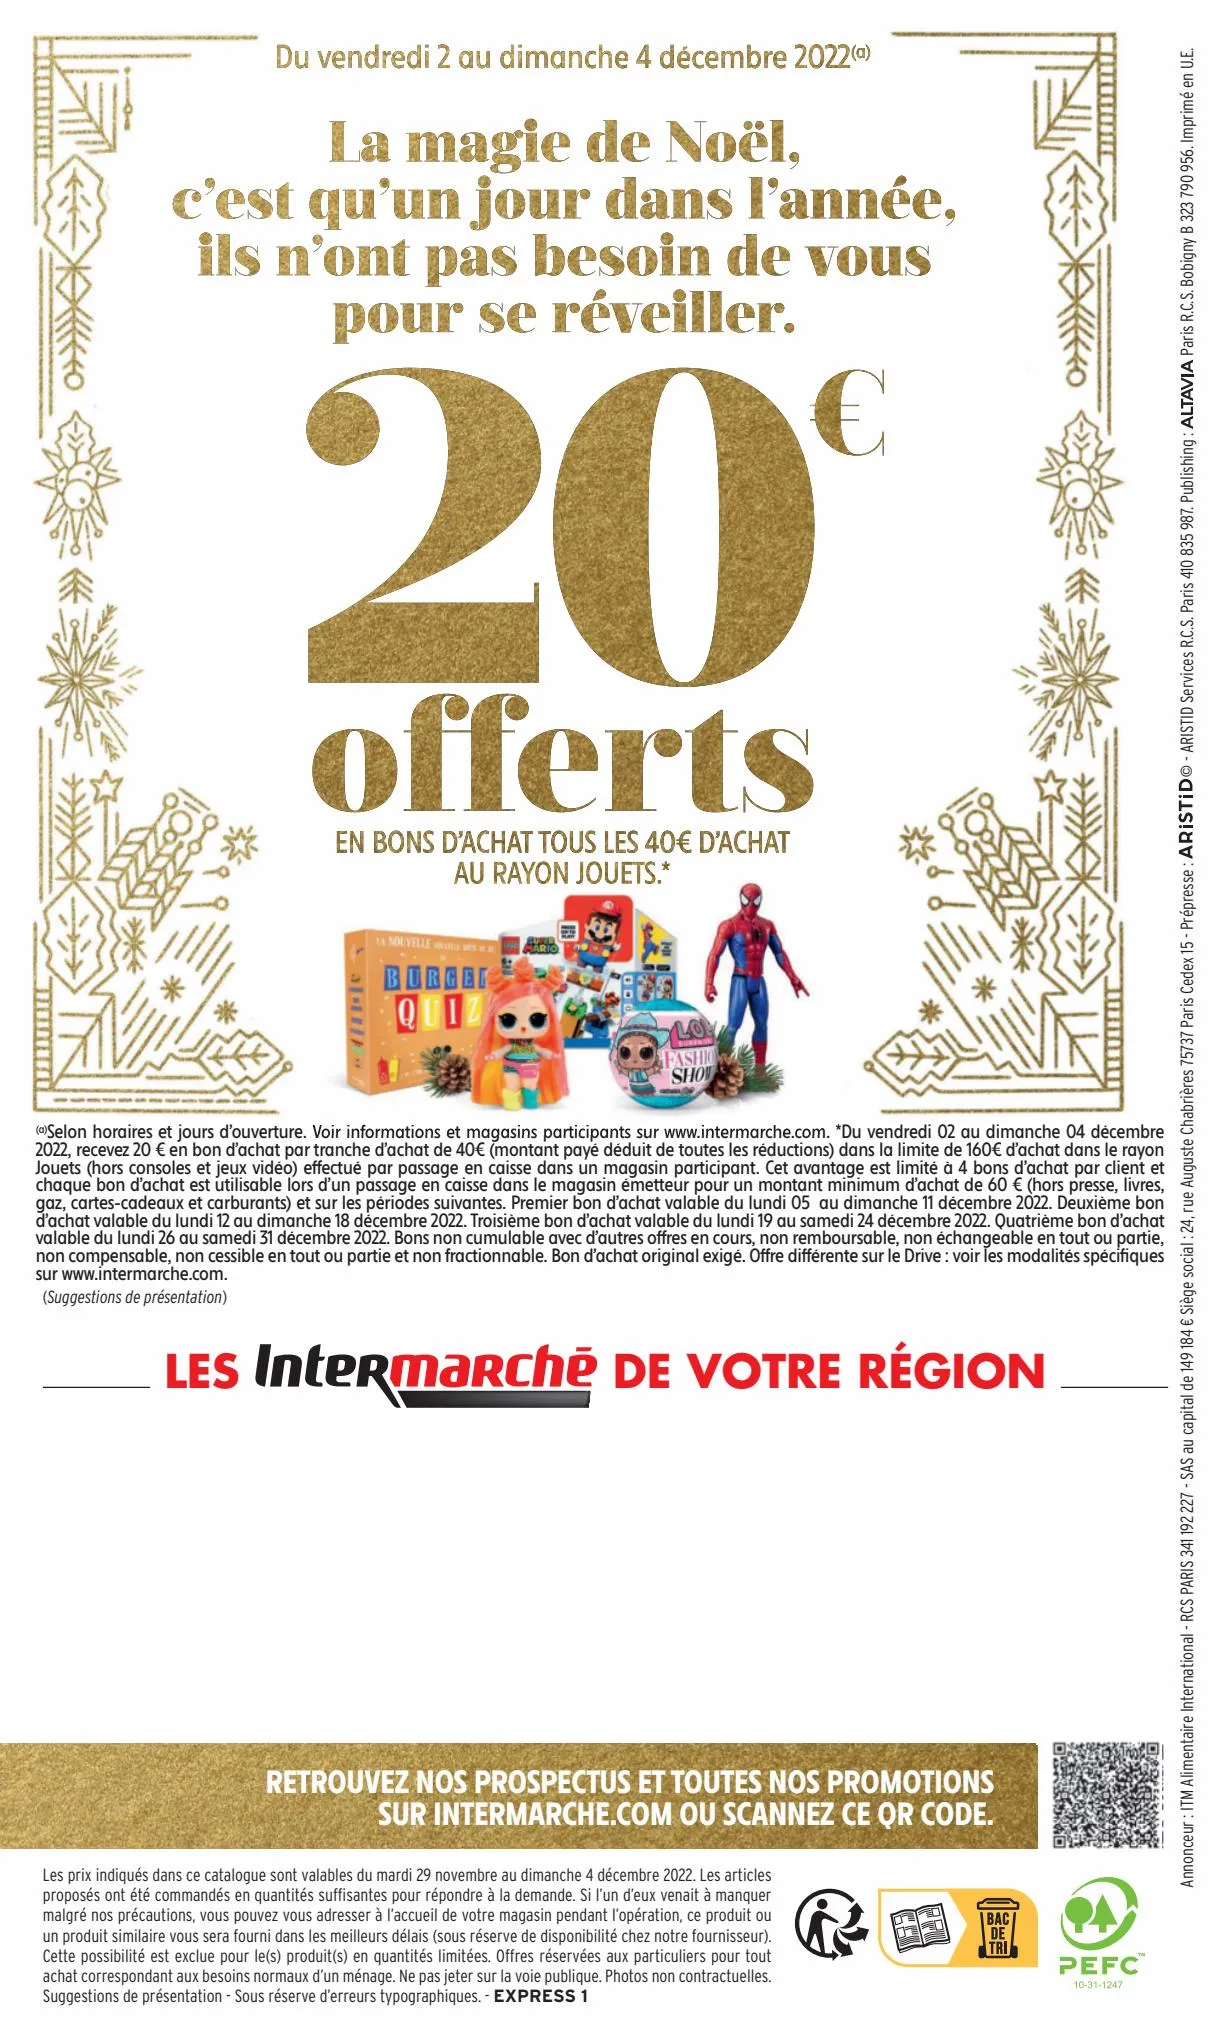 Catalogue 130€ offerts en bons d'achat, page 00018